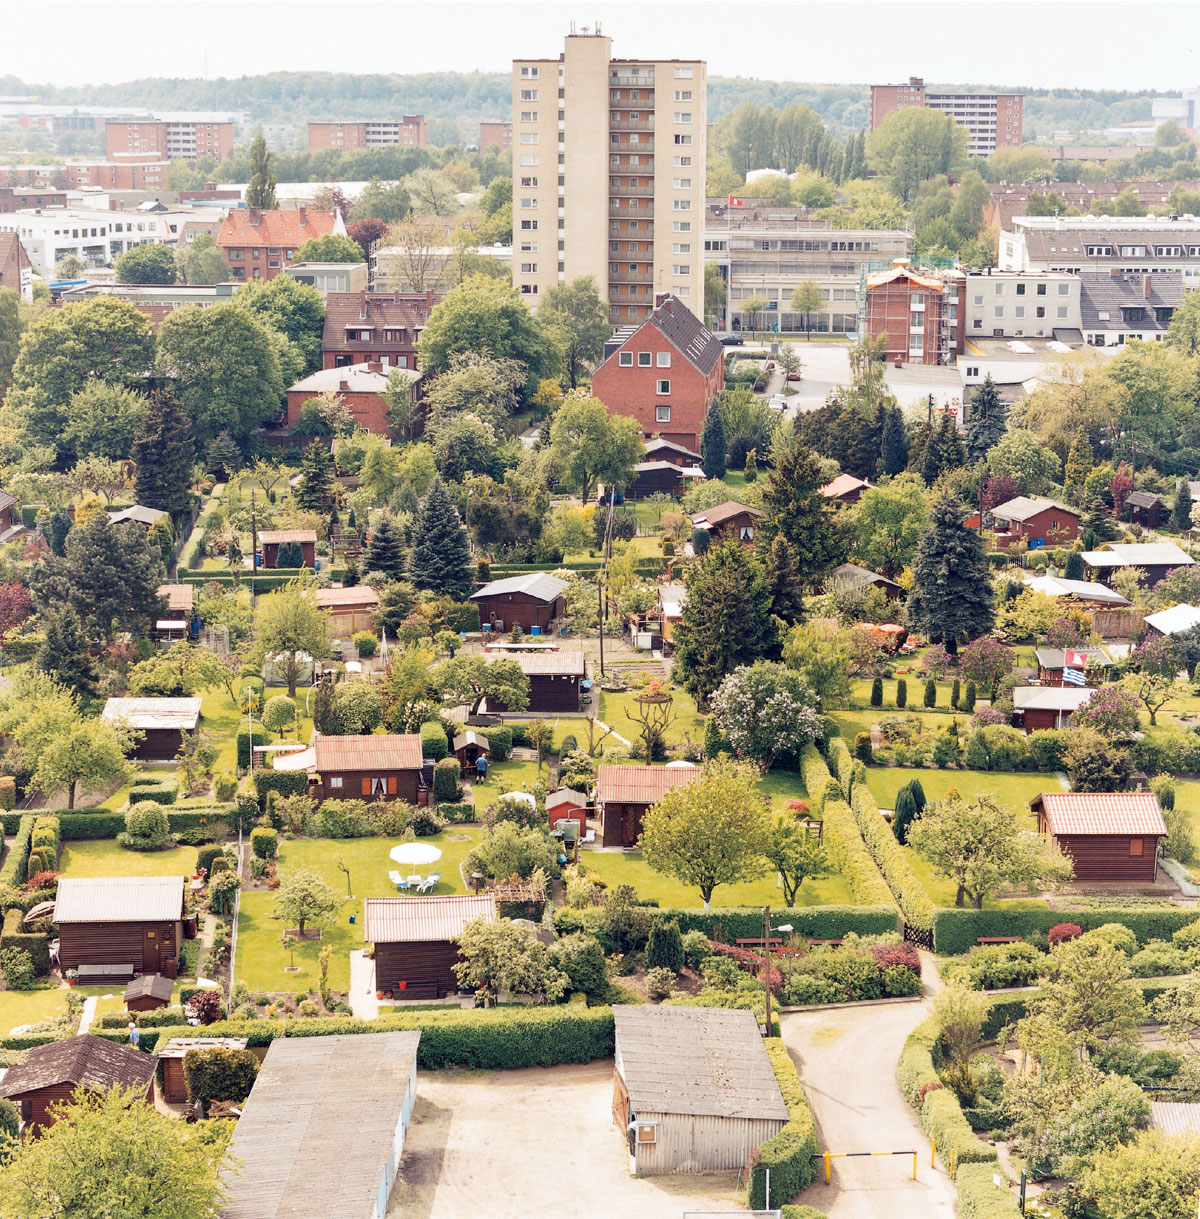 Aerial view of Schreber gardens. Photo Enver Hirsch.